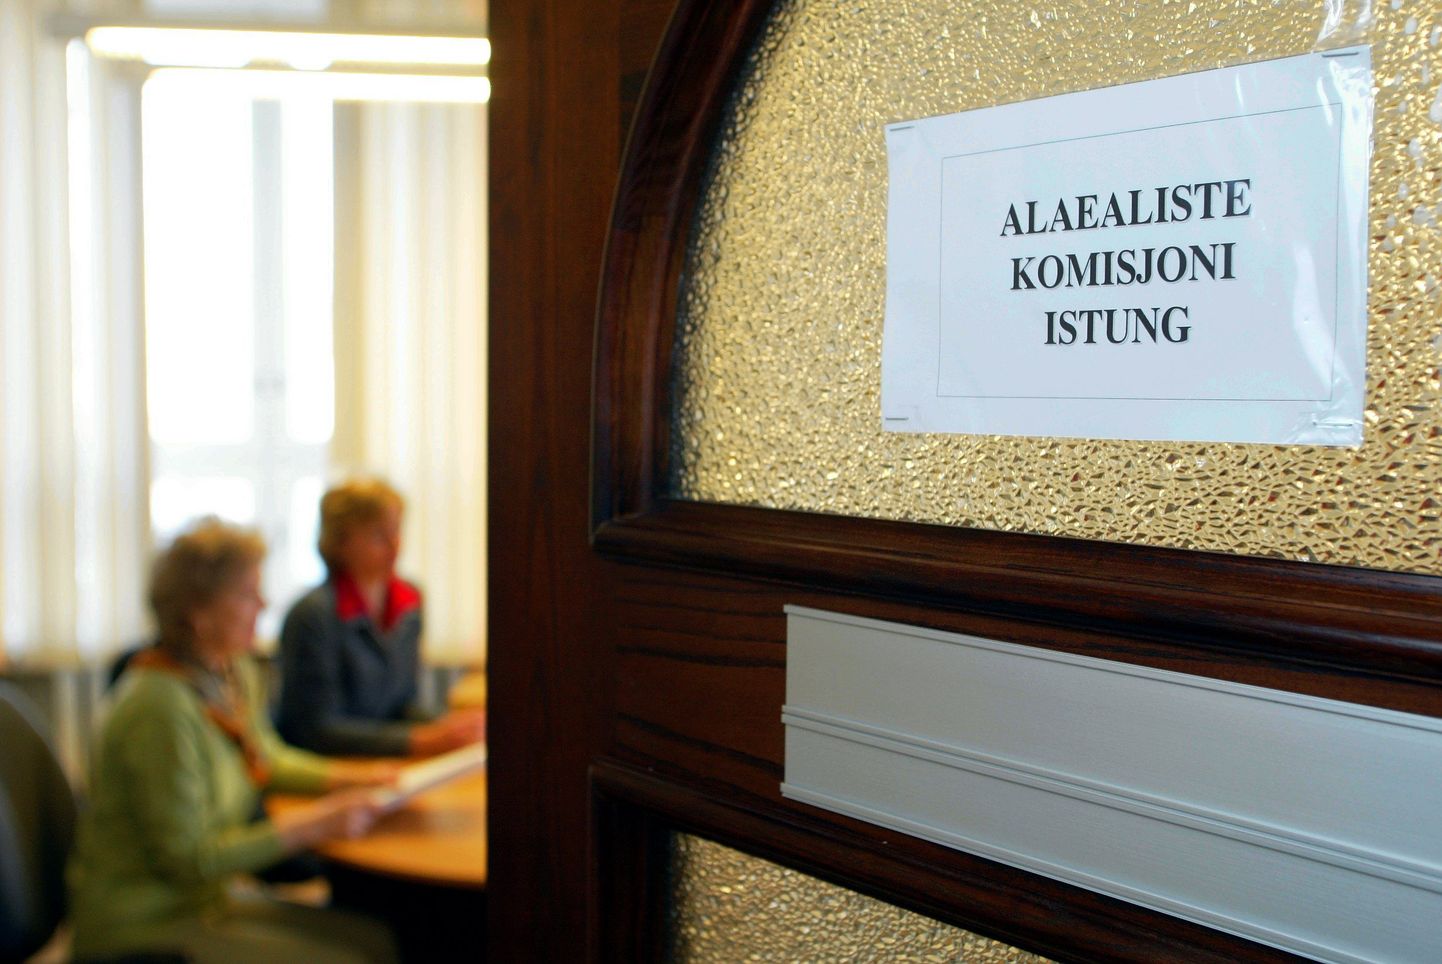 Järgmisel aastal kaovad Eestis alaealiste komisjonid.